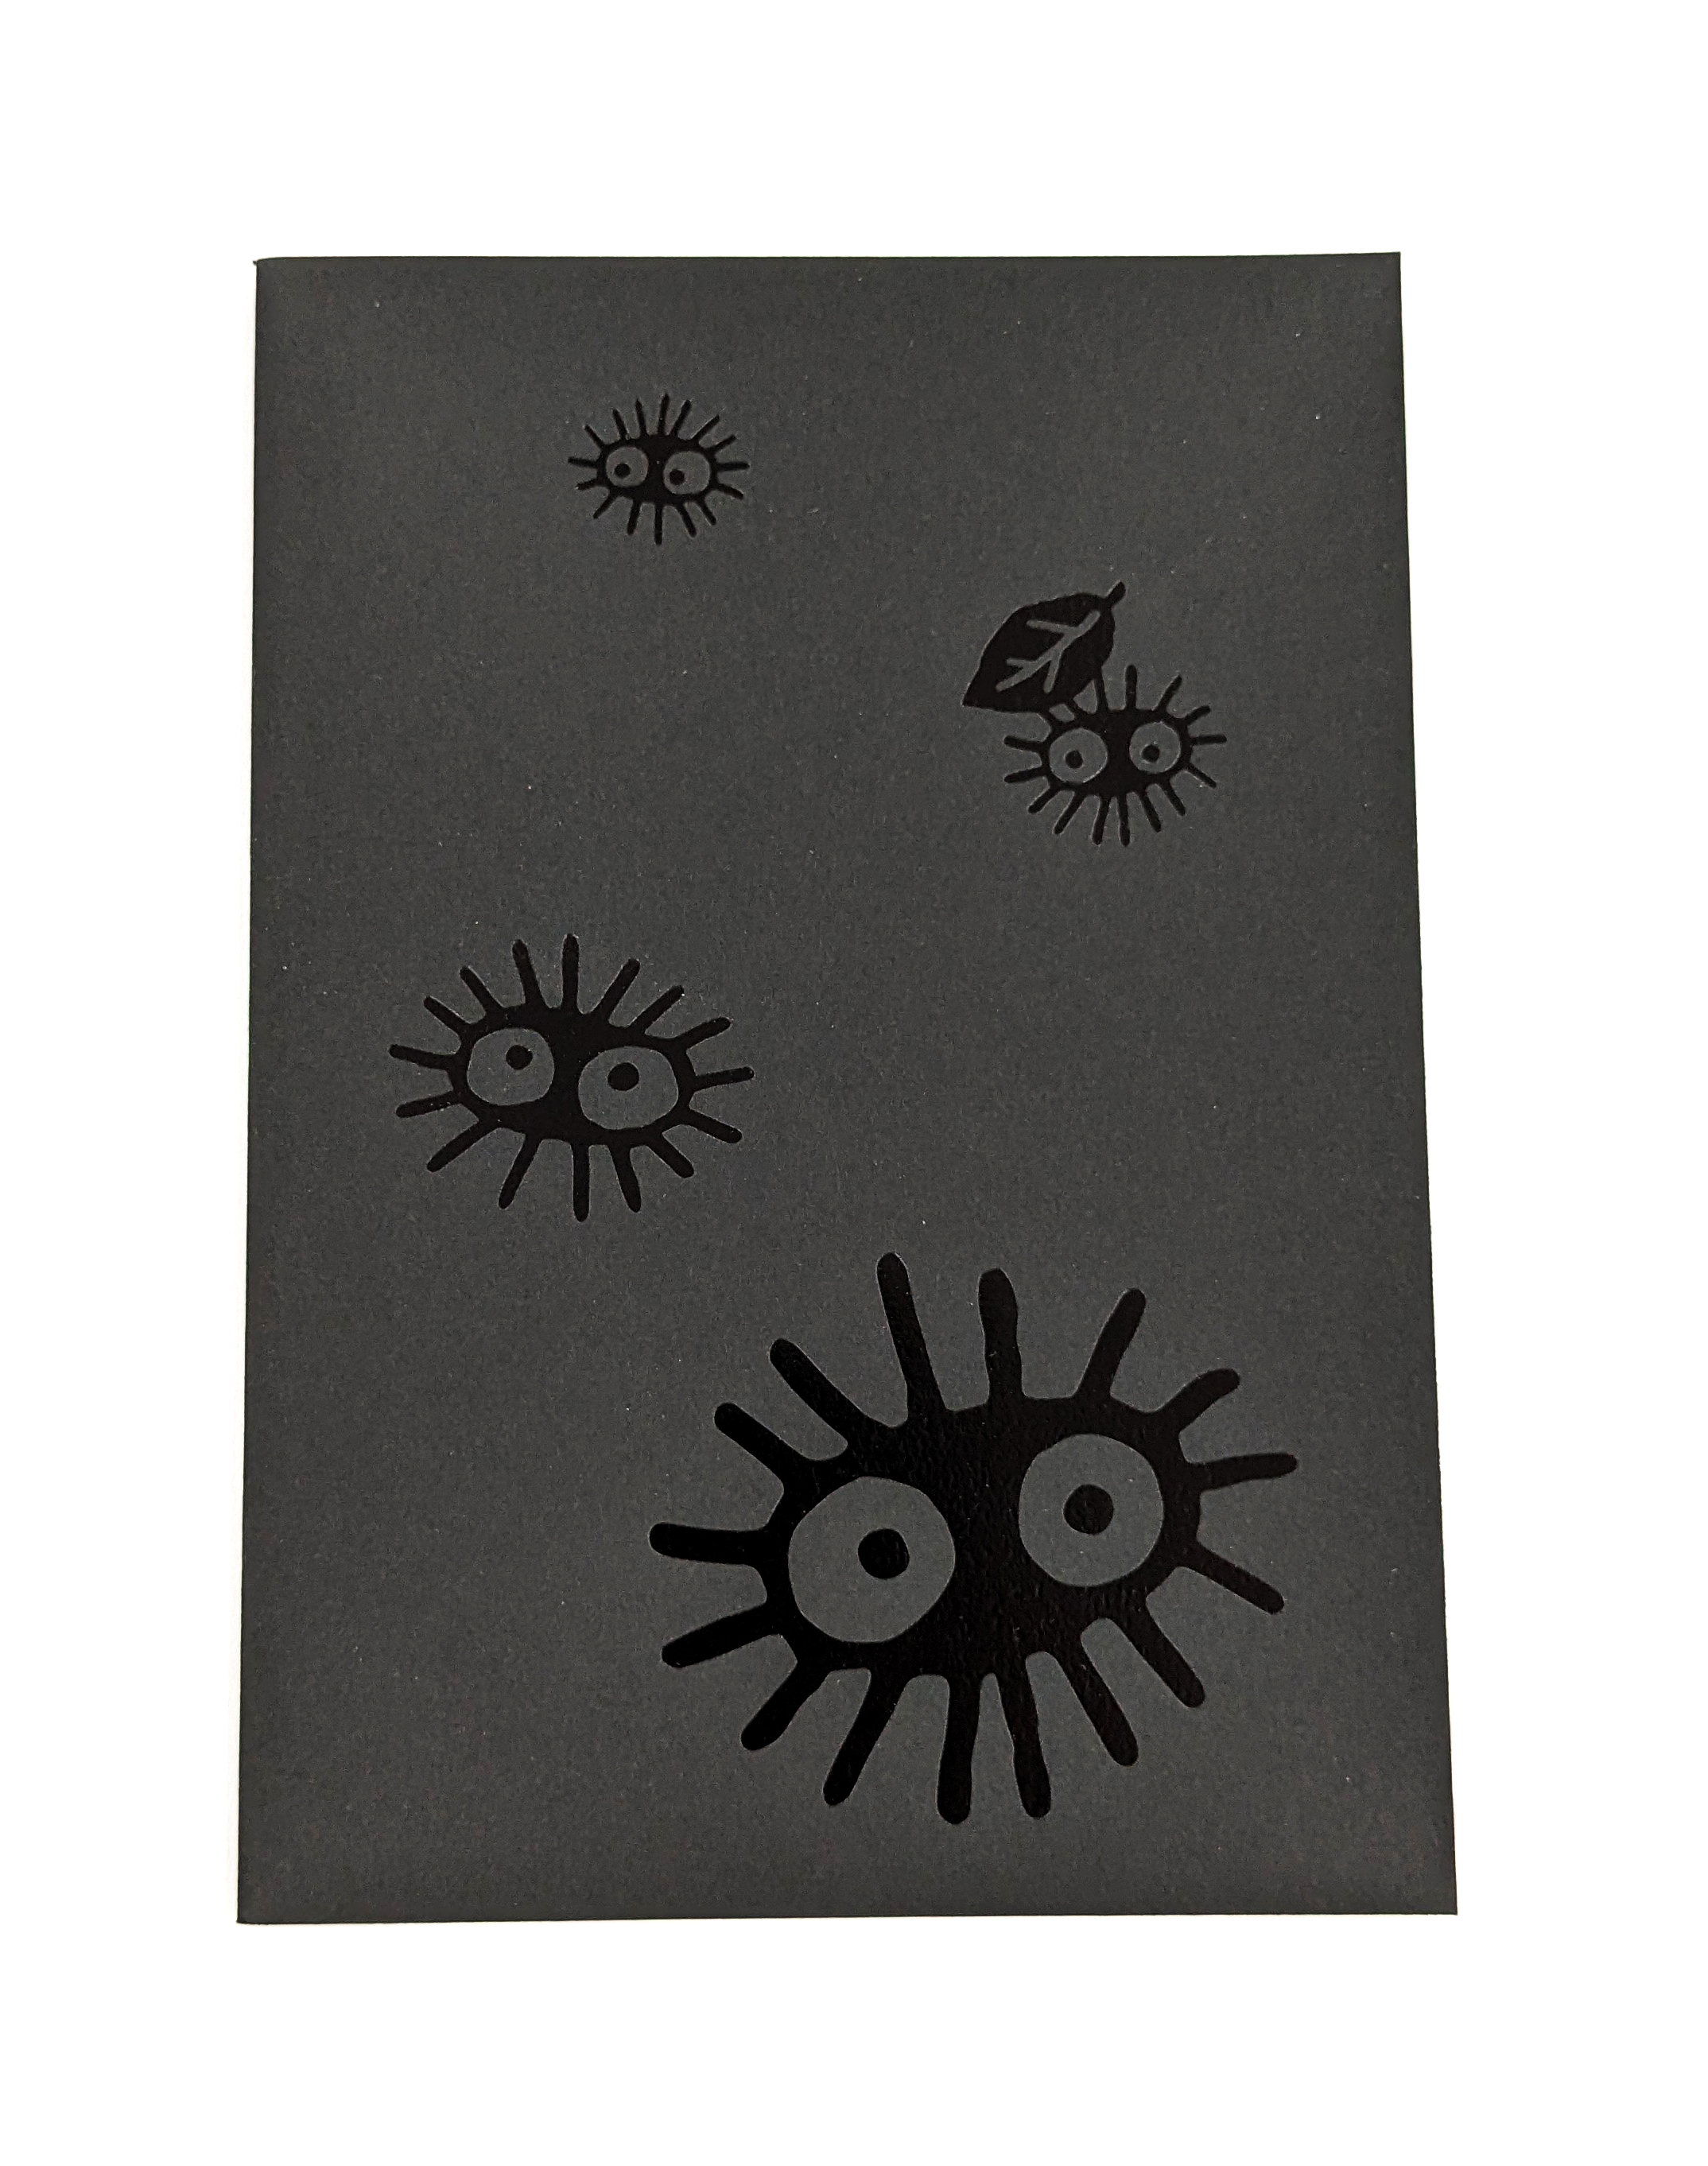 Studio Ghibli Notebook B6 Dot Grid 48 Seiten Soot Sprites Spirited Away